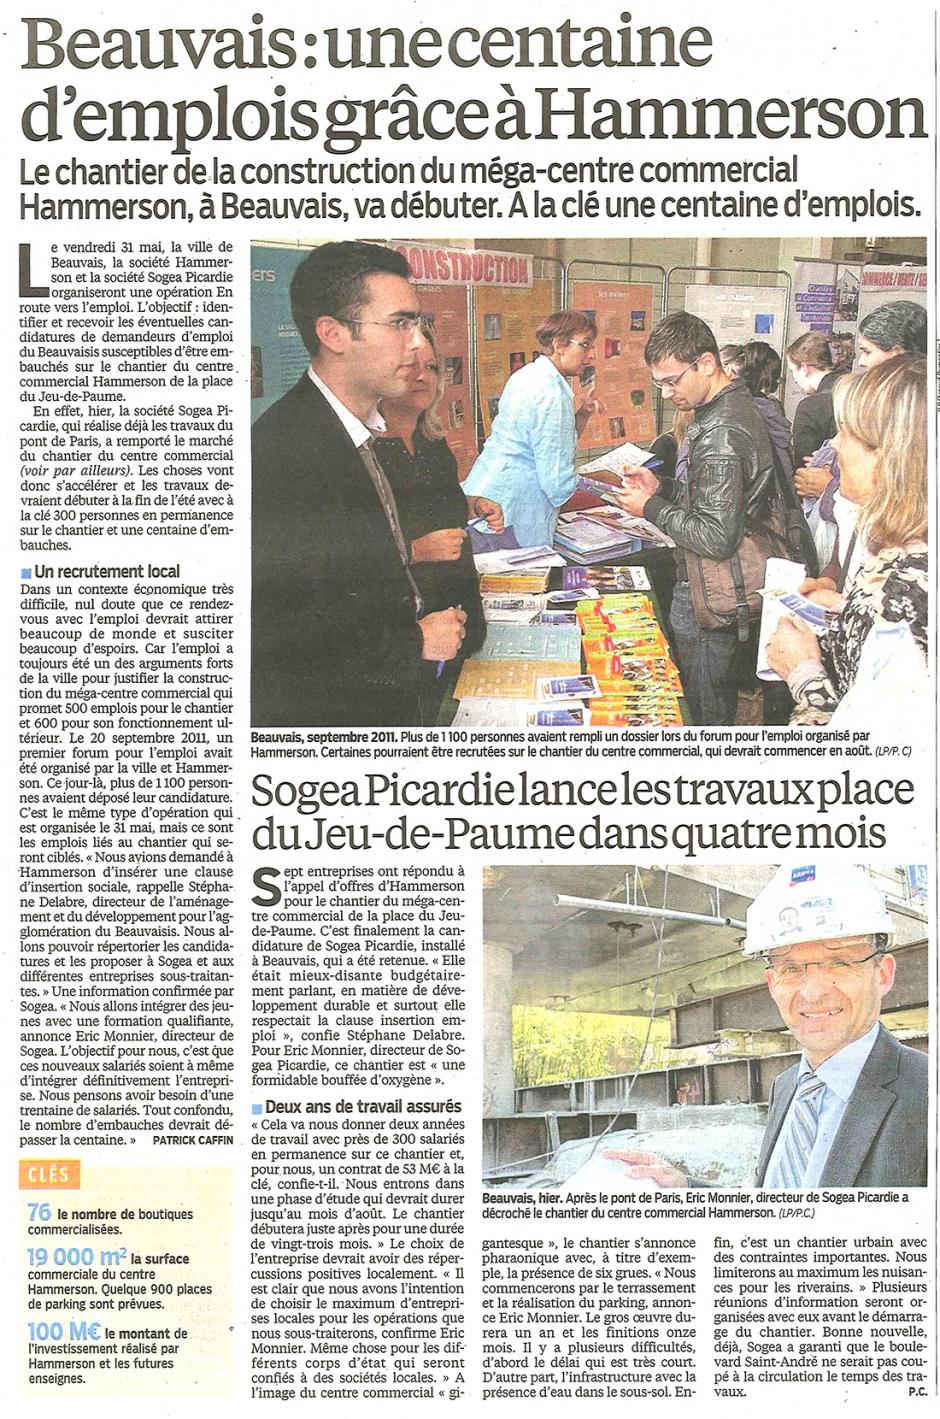 20130426-LeP-Beauvais-Une centaine d'emplois grâce à Hammerson